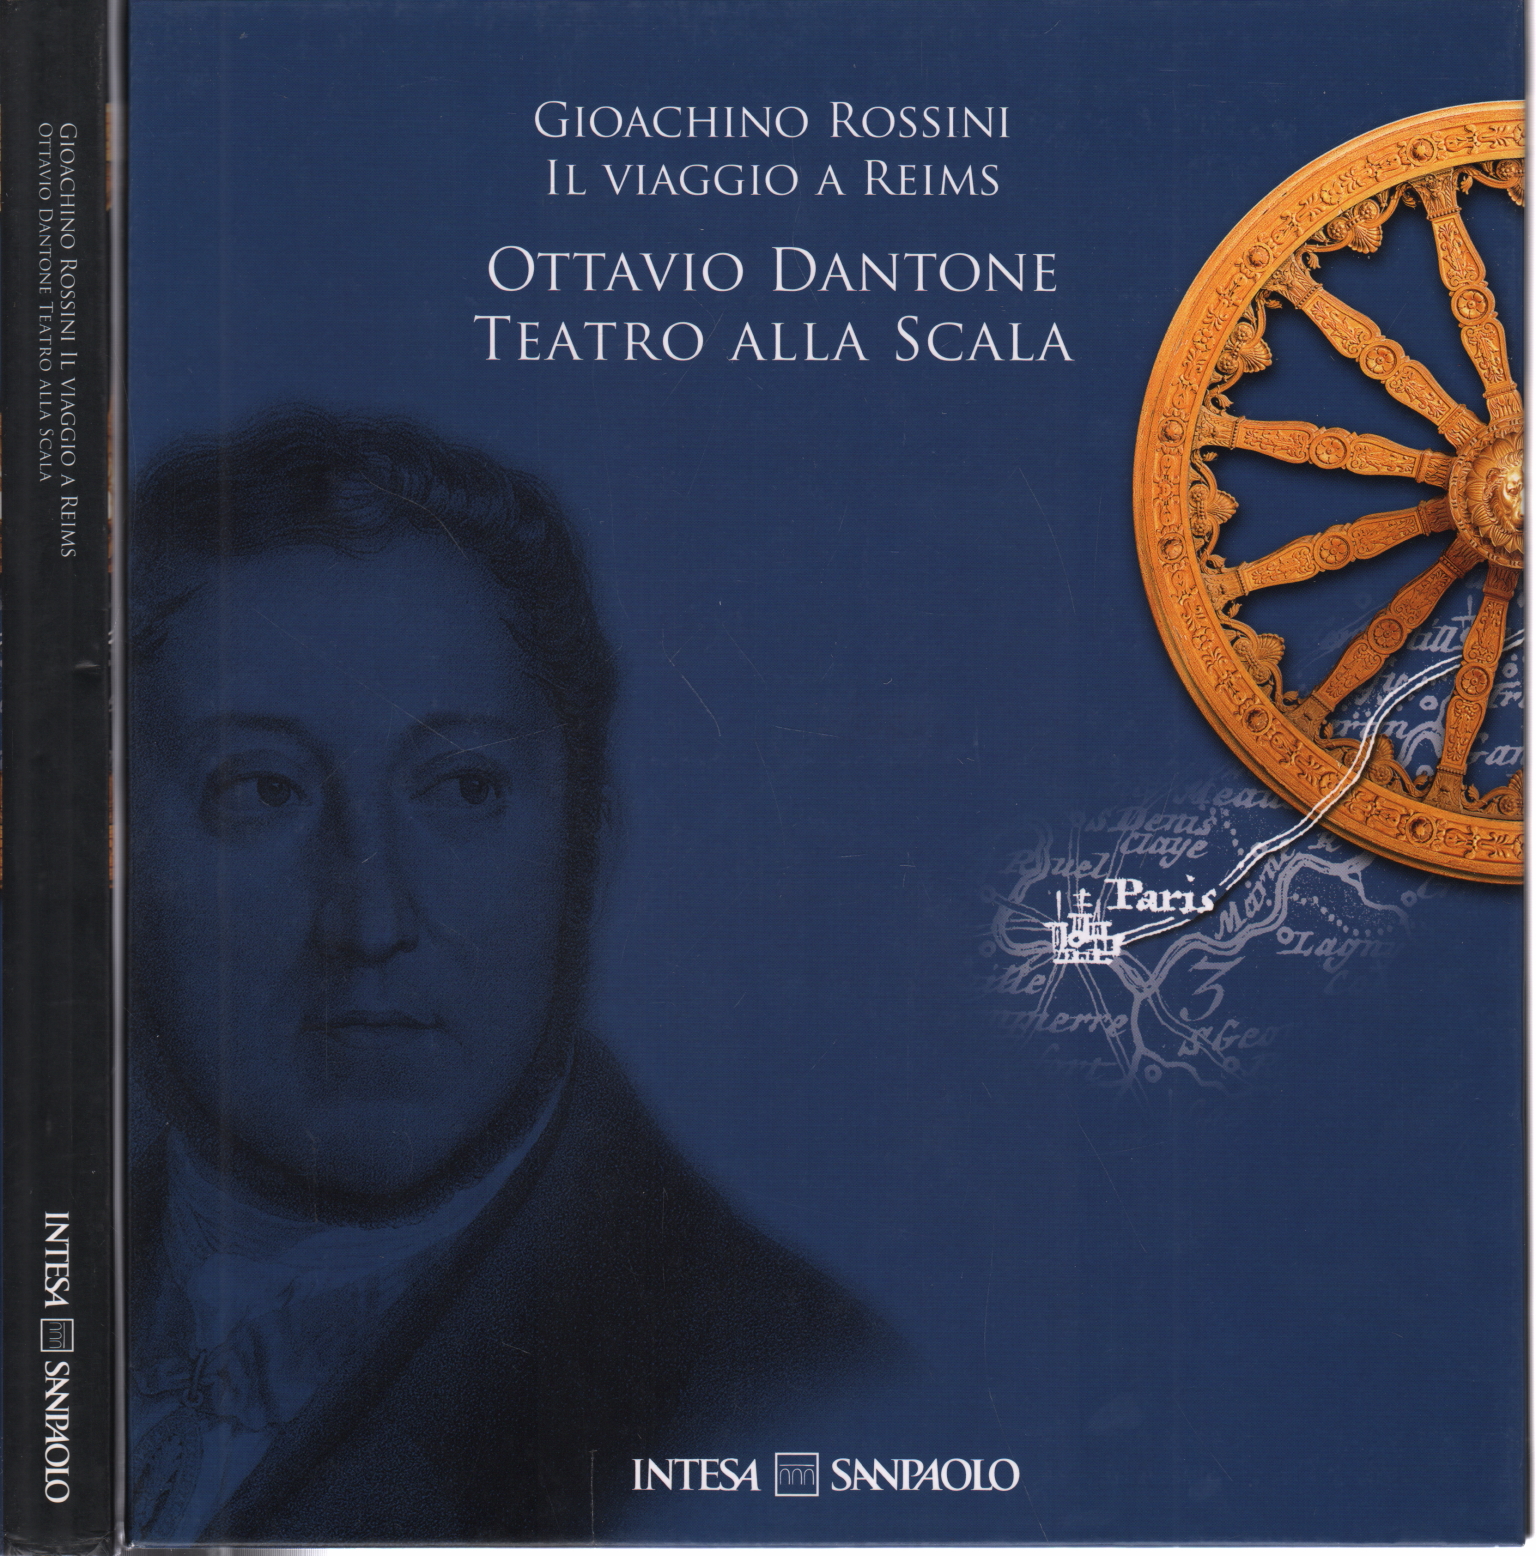 Gioacchino Rossini "Il viaggio a Reims" Ottavio D, Gioacchino Rossini